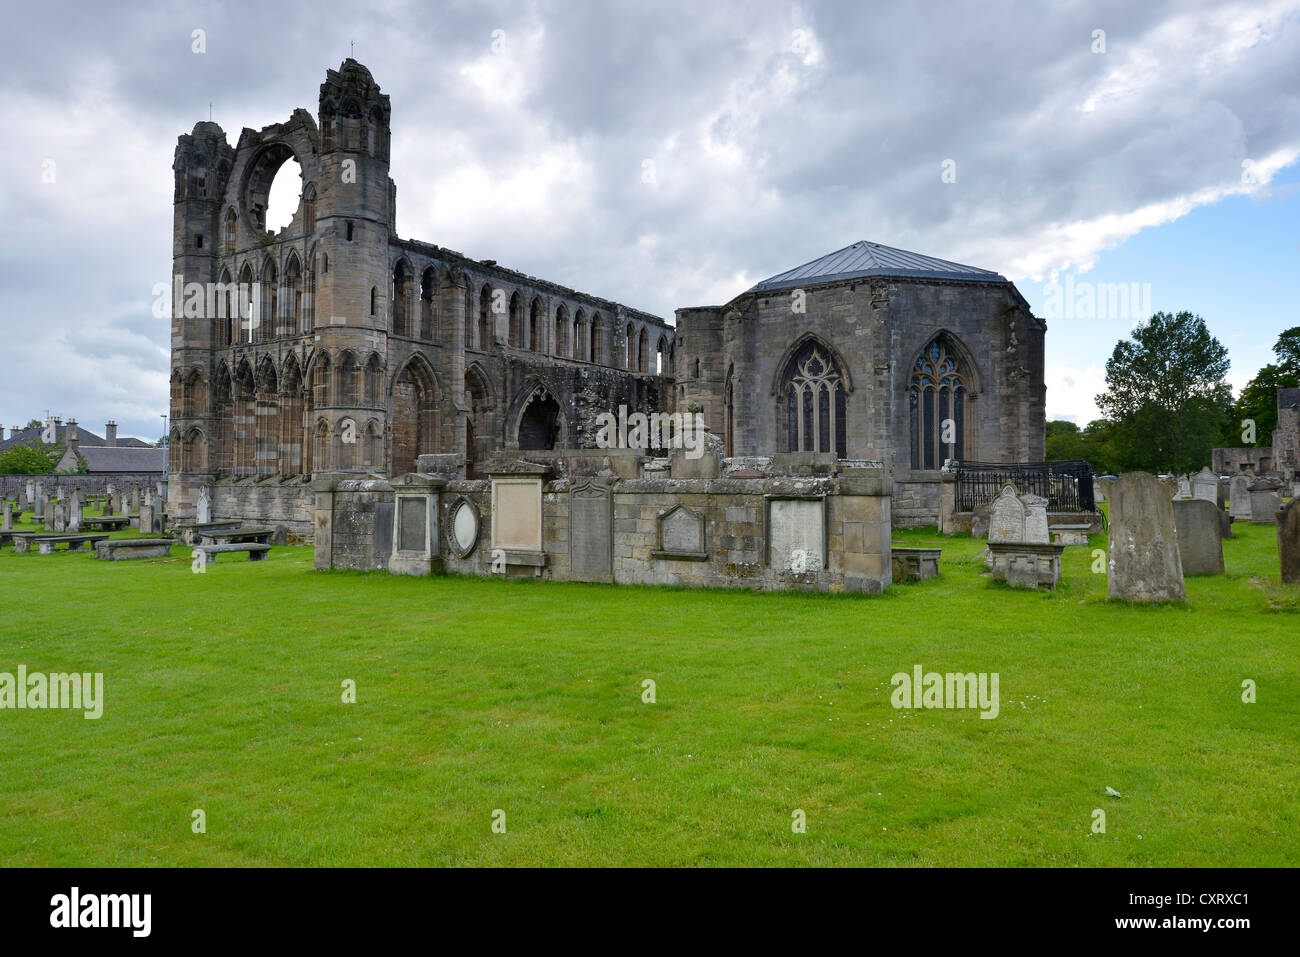 Pendant la Réforme, l'une fois plus grande cathédrale en Ecosse a été détruit, Elgin, Eilginn Muireibh : gaélique, Moray, Ecosse Banque D'Images